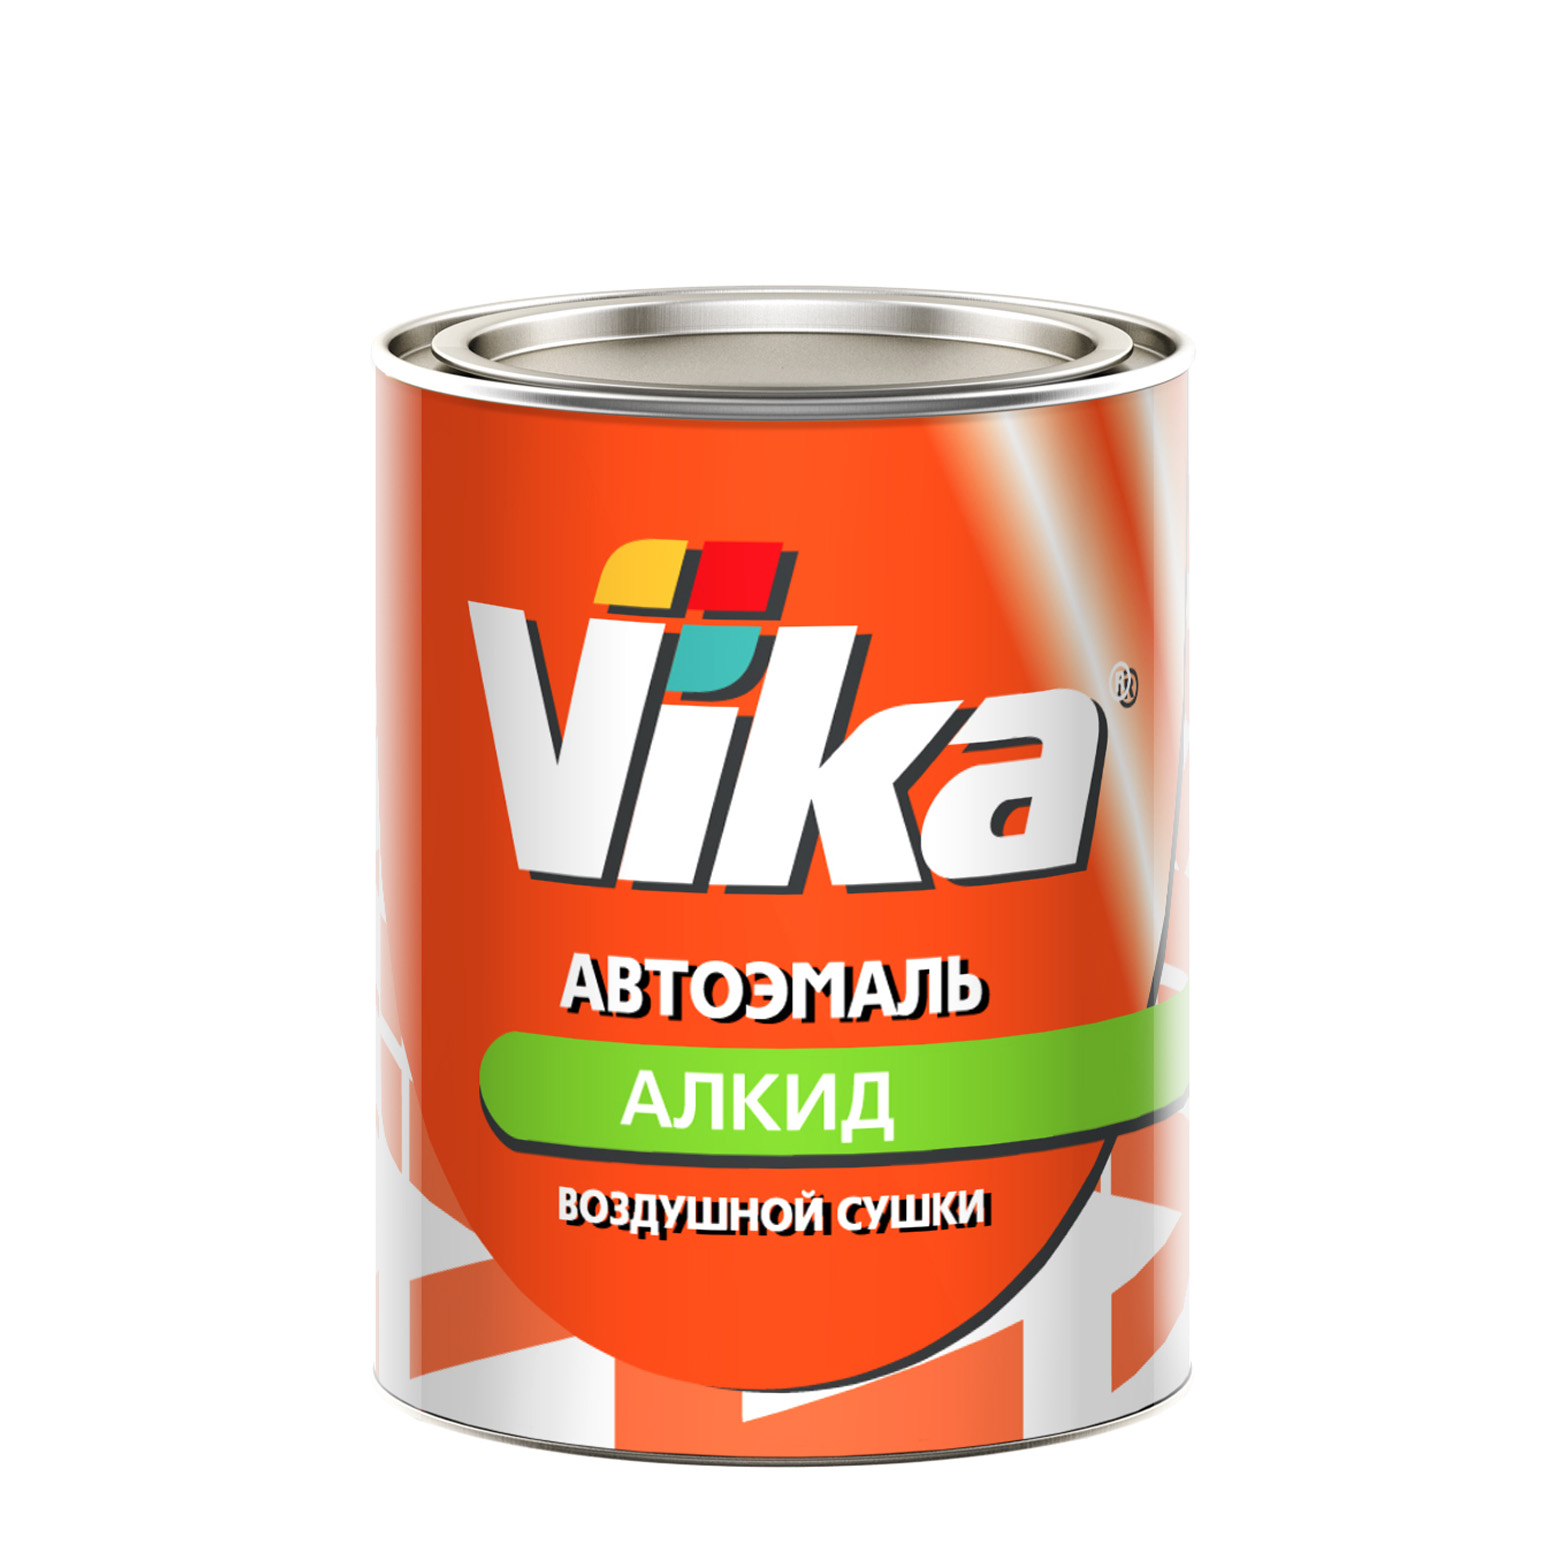 Фото 1 - Автоэмаль Vika-60, цвет 377 Мурена алкидная глянцевая естественной сушки - 0,8 кг.